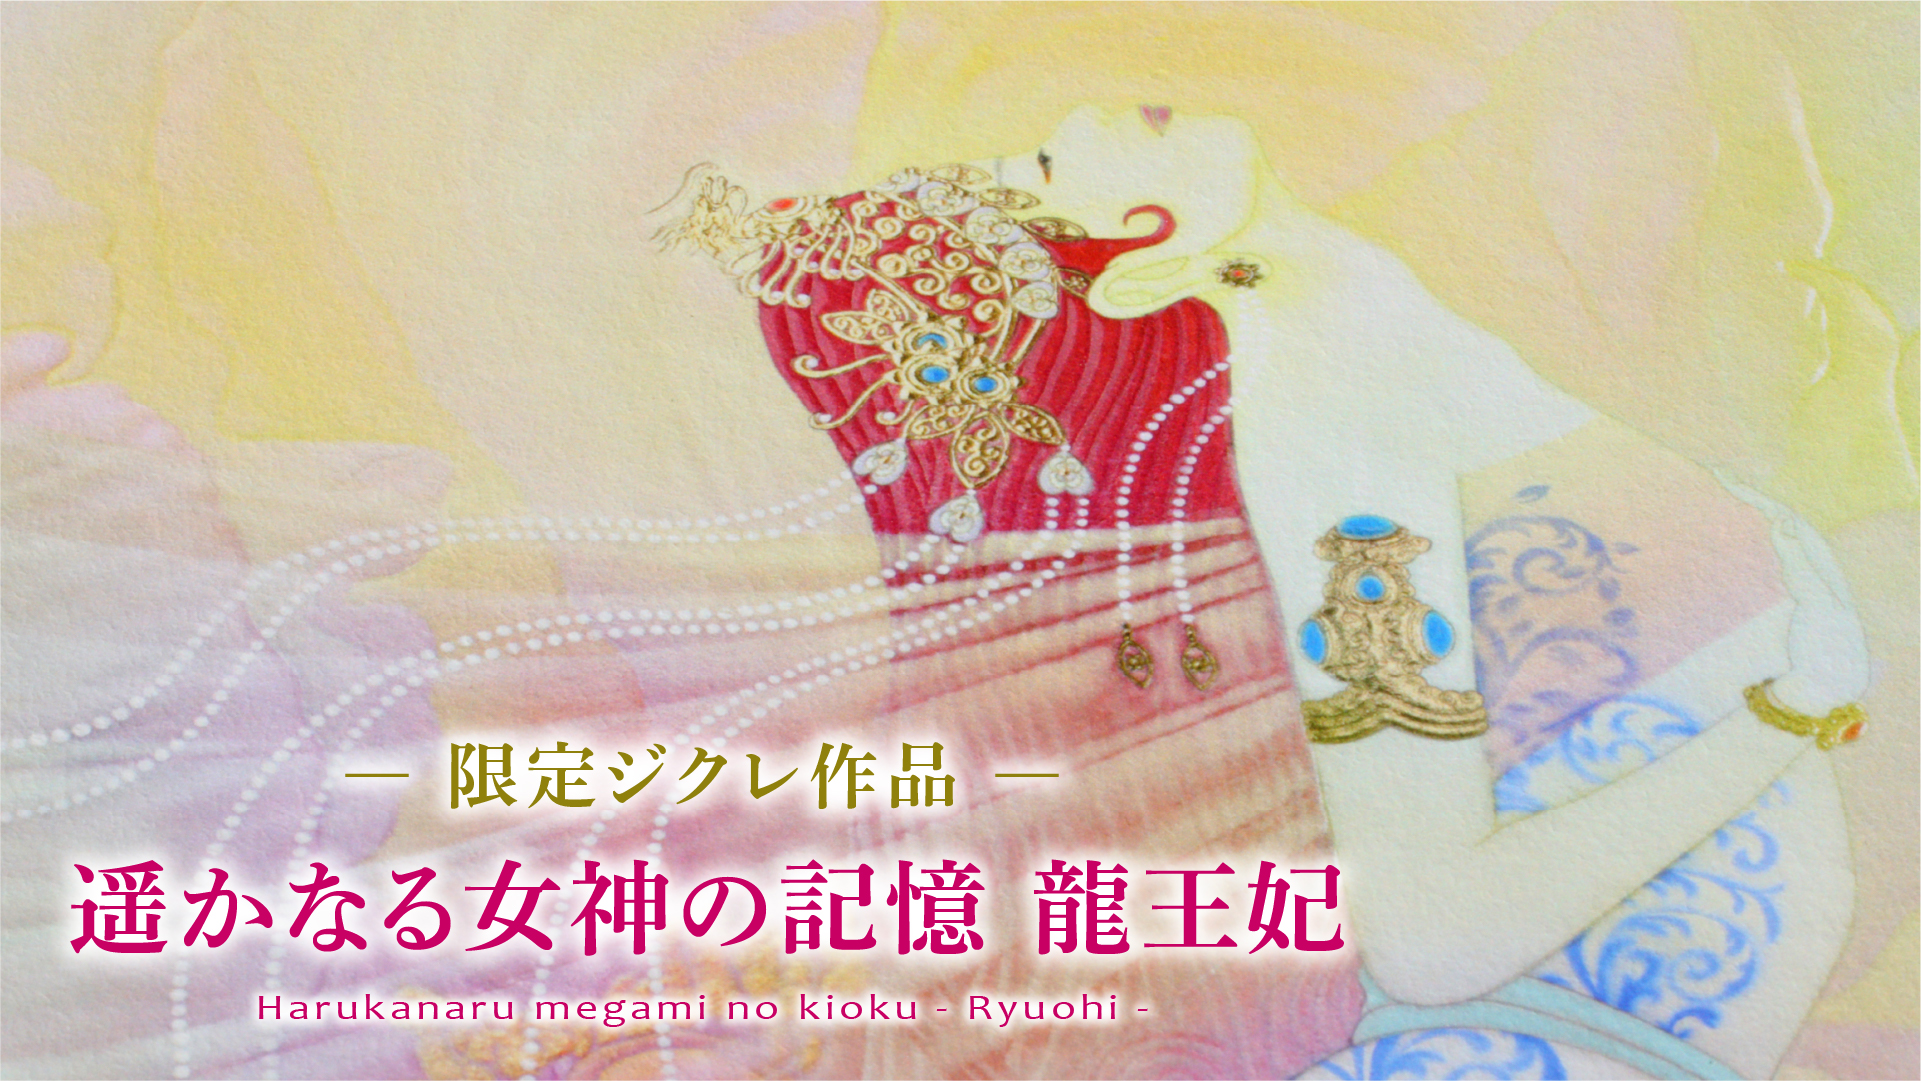 复制画艺术微喷《遥远女神的回忆：龙王妃》复制画有3种。<br>
请通过视频浏览各自的特征。